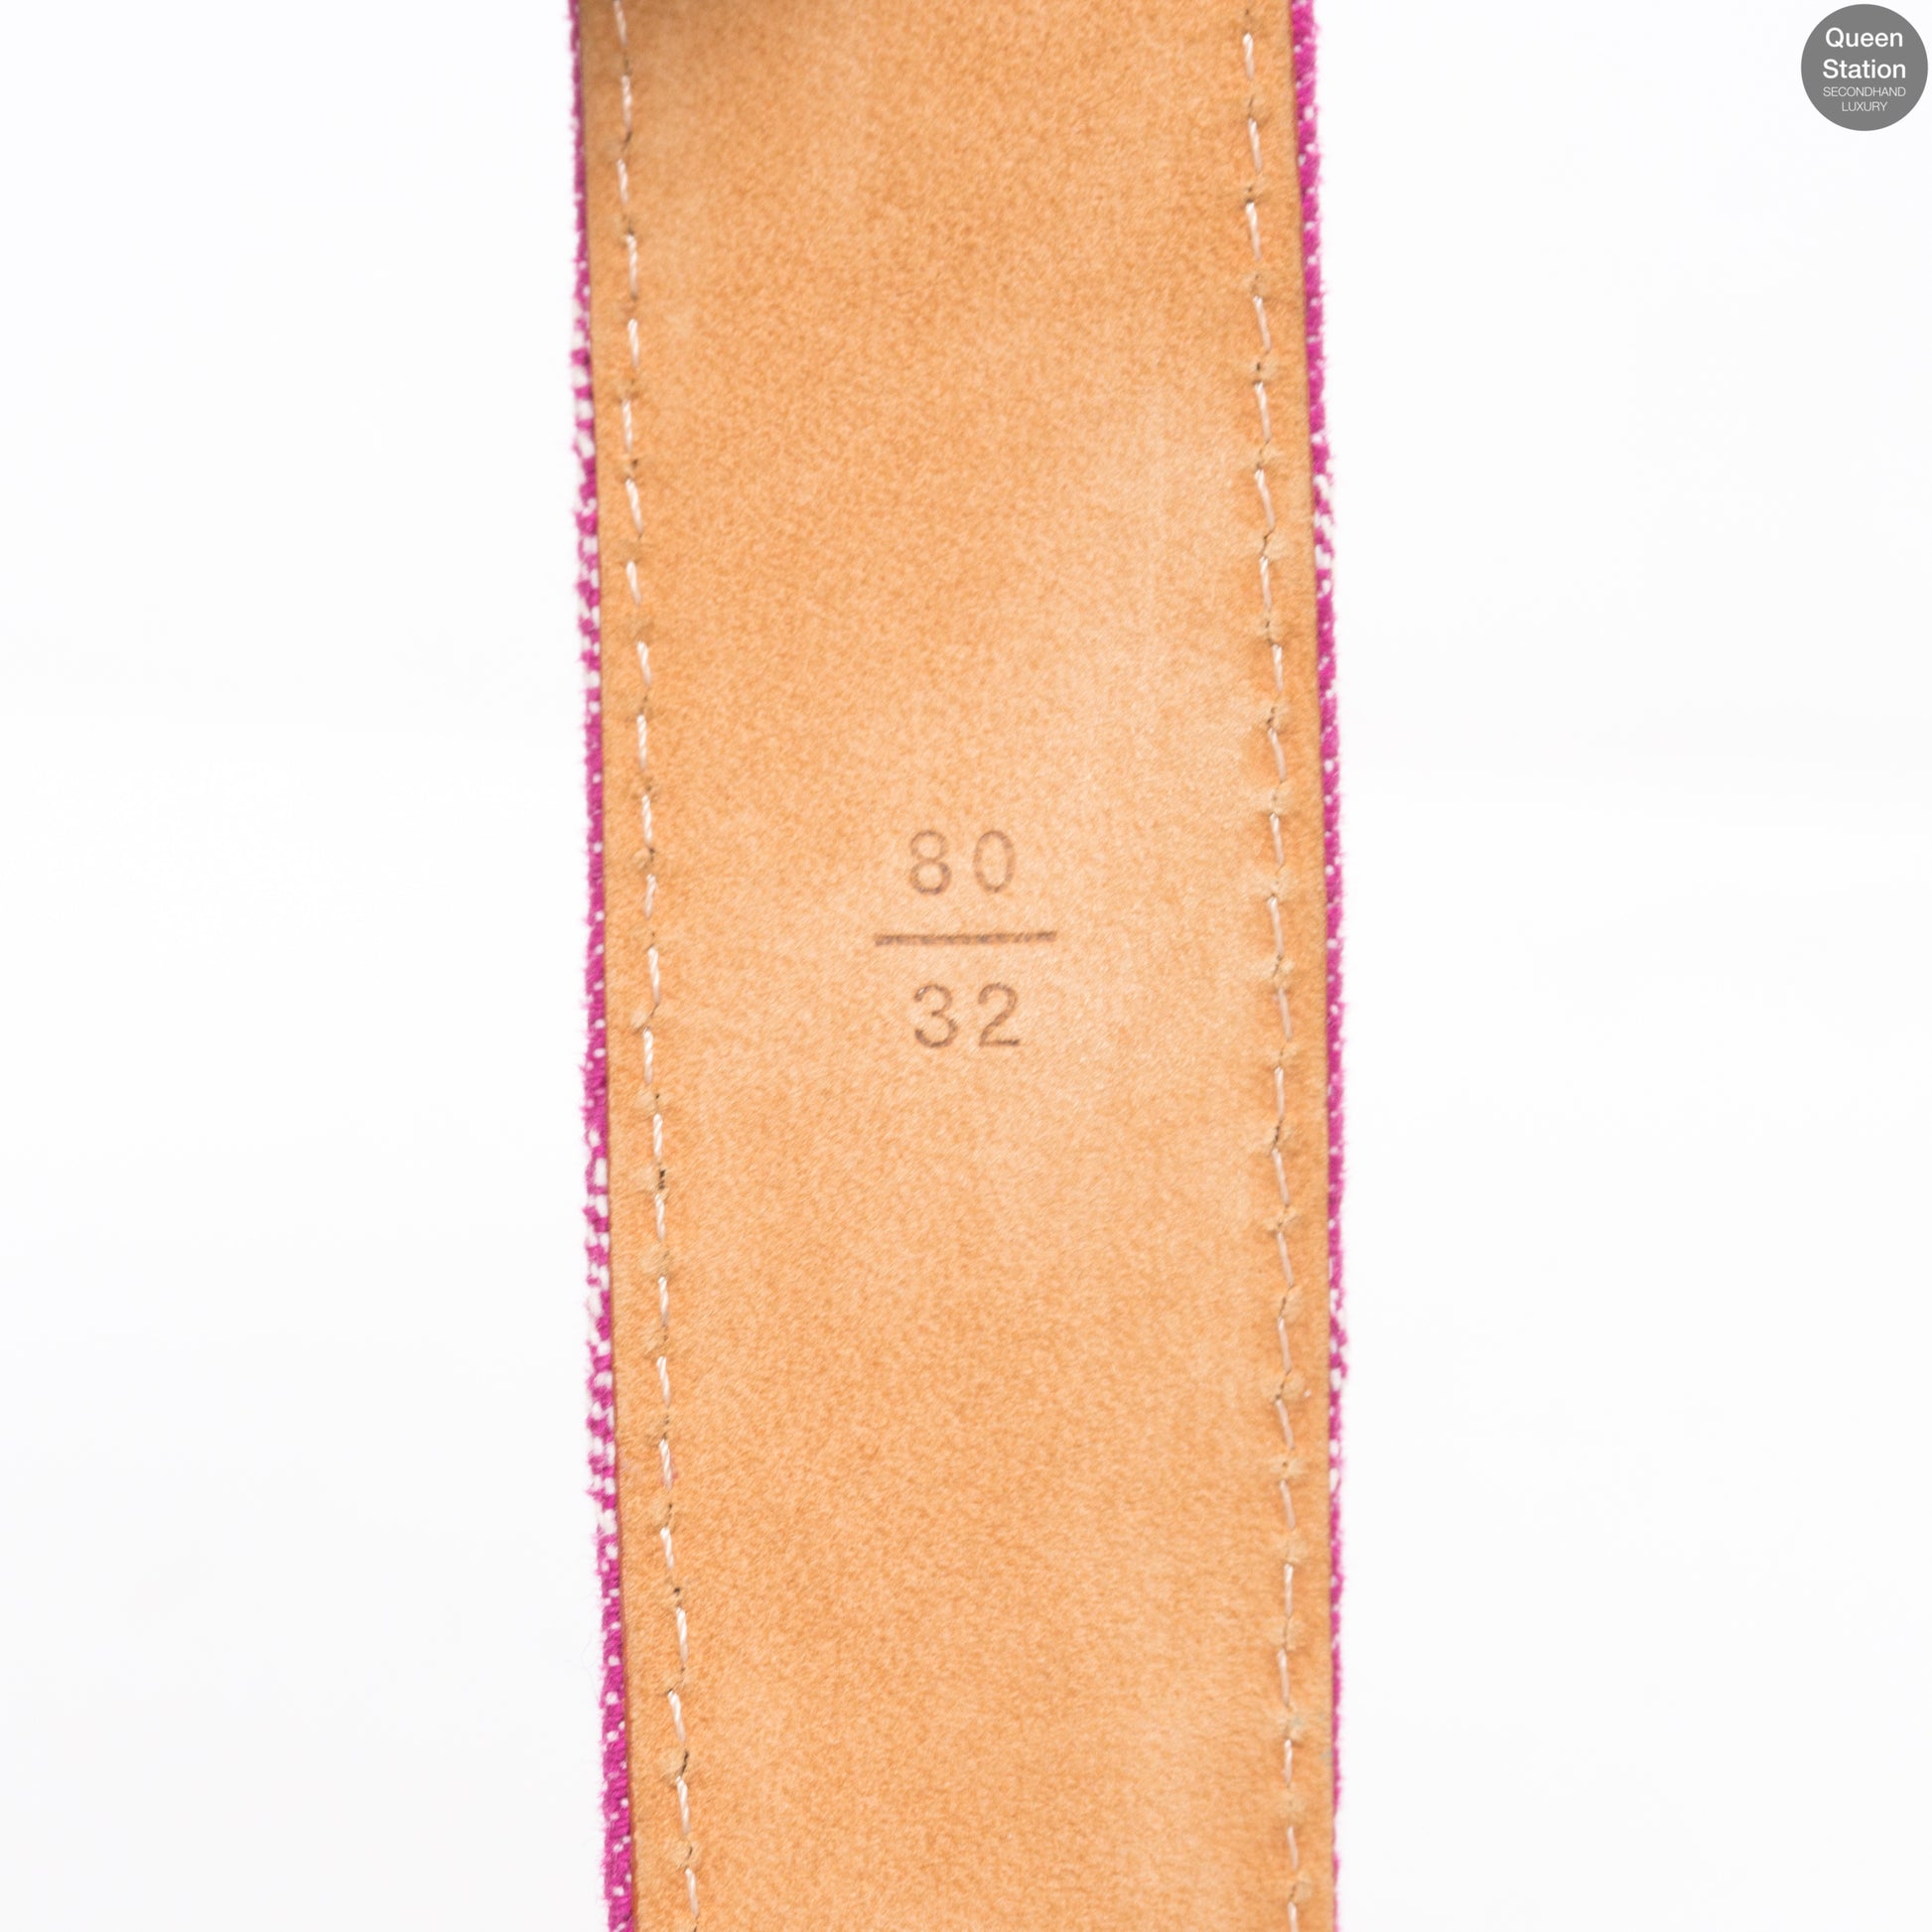 Louis Vuitton – Monogram Belt Pink Denim 80 cm – Queen Station